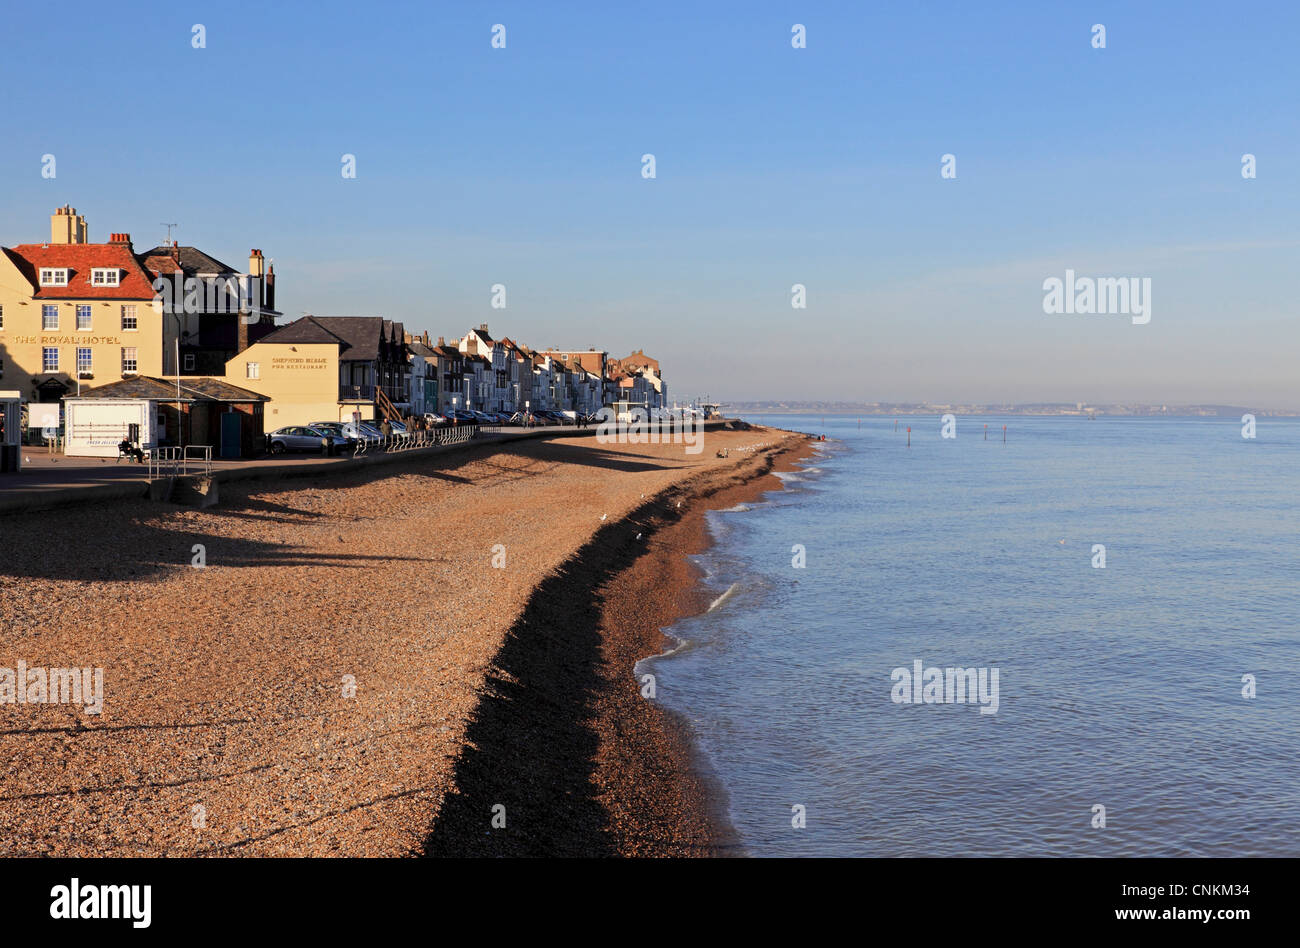 3729. Il lungomare e la spiaggia, trattare, Kent, Inghilterra Foto Stock